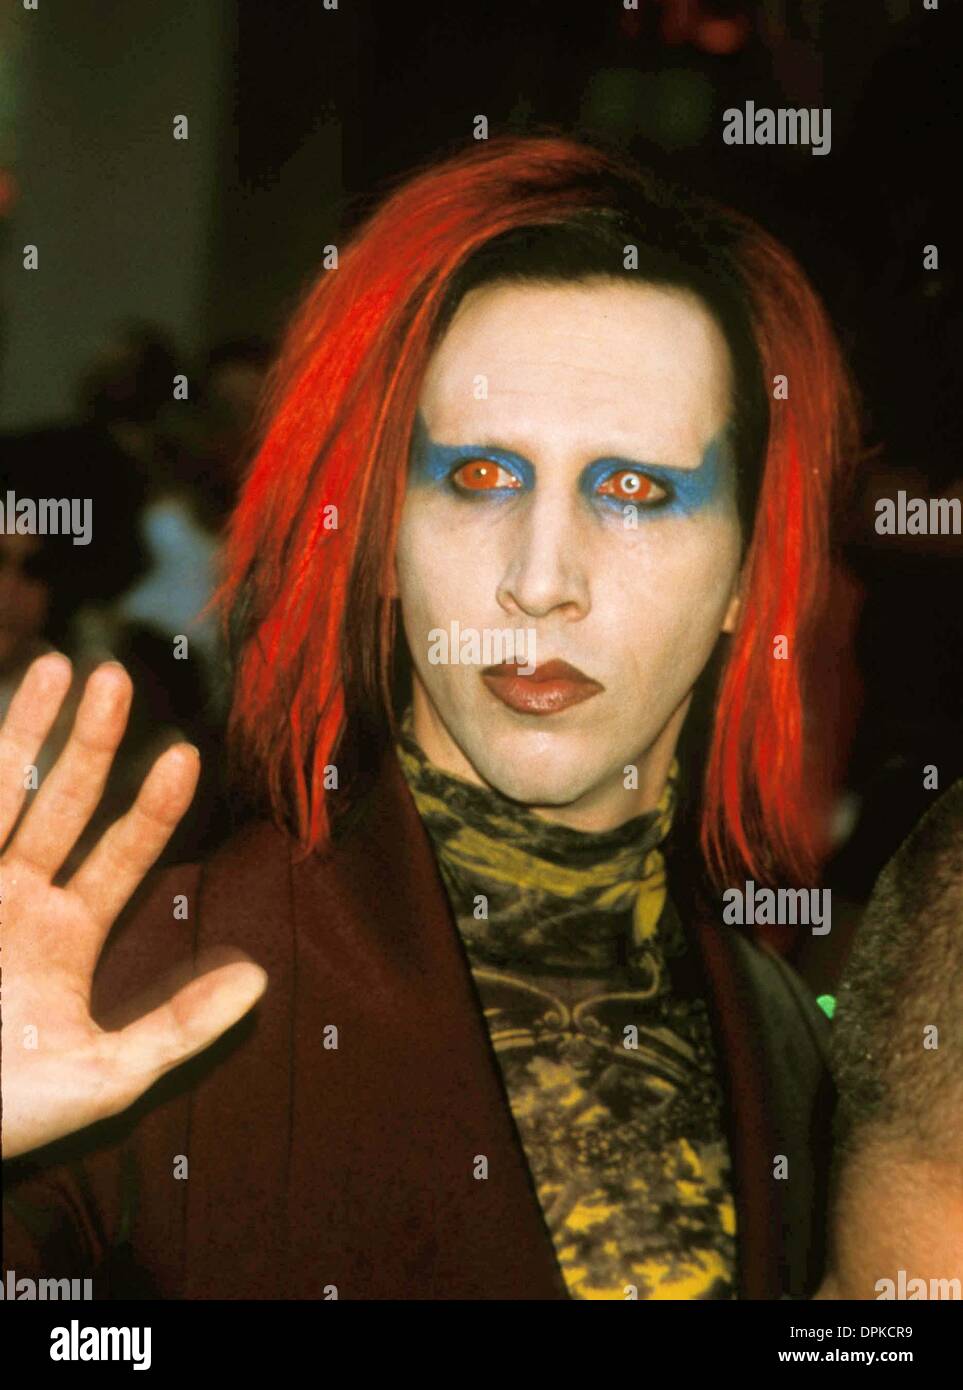 Febbraio 22, 2006 - K13134AR.Virgin Megastore UNION SQUARE PRE OPENING PARTY IN NEW YORK CITY. ANDREA RENAULT- Marilyn Manson.1998(Immagine di credito: © Globo foto/ZUMAPRESS.com) Foto Stock